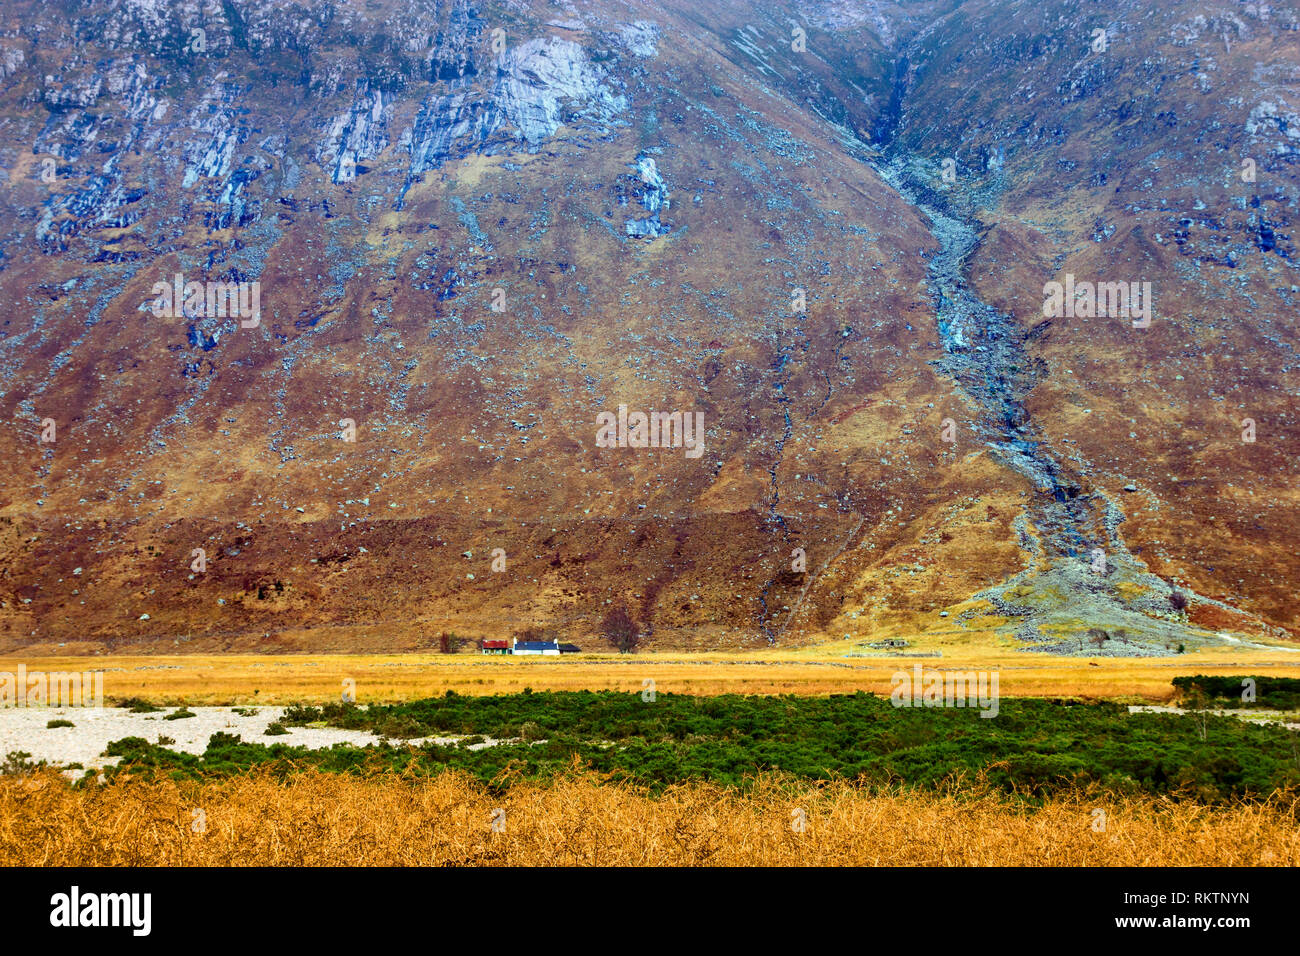 Une vue d'une exploitation agricole à distance éclipsé par une imposante montagne dans les Highlands écossais. Banque D'Images